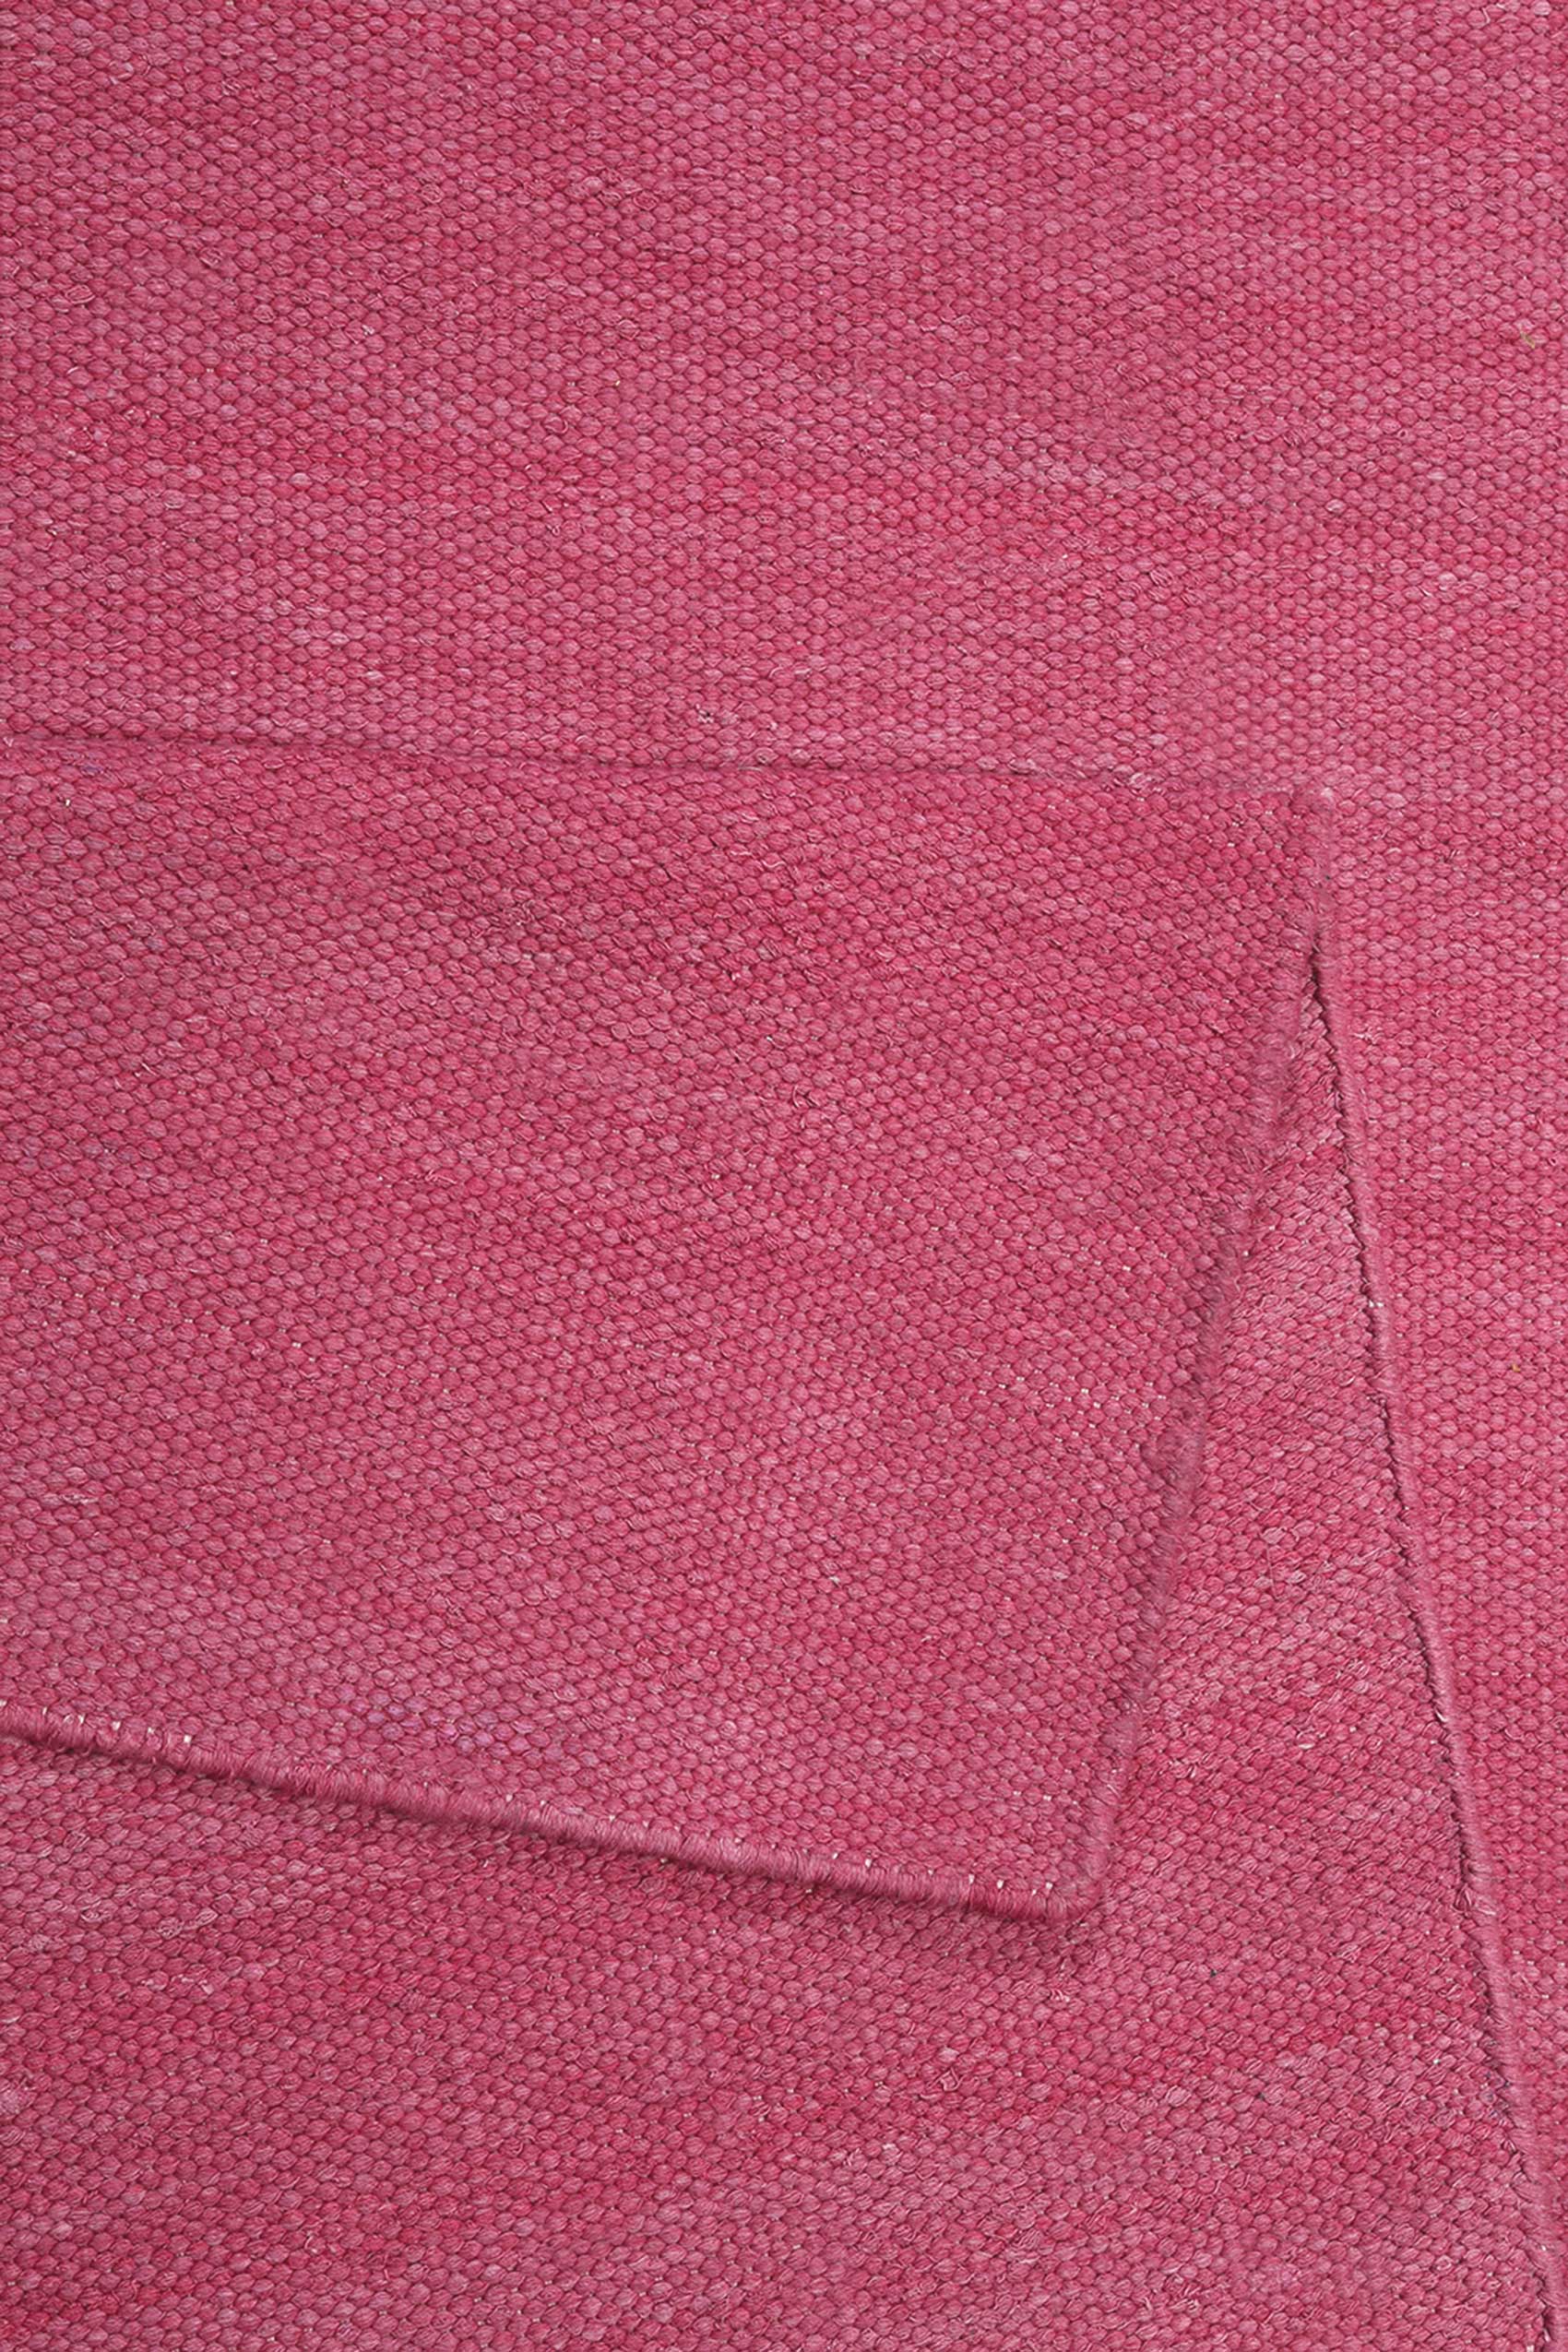 Esprit Kurzflor Teppich Pink aus Baumwolle » Rainbow Kelim « - Ansicht 3